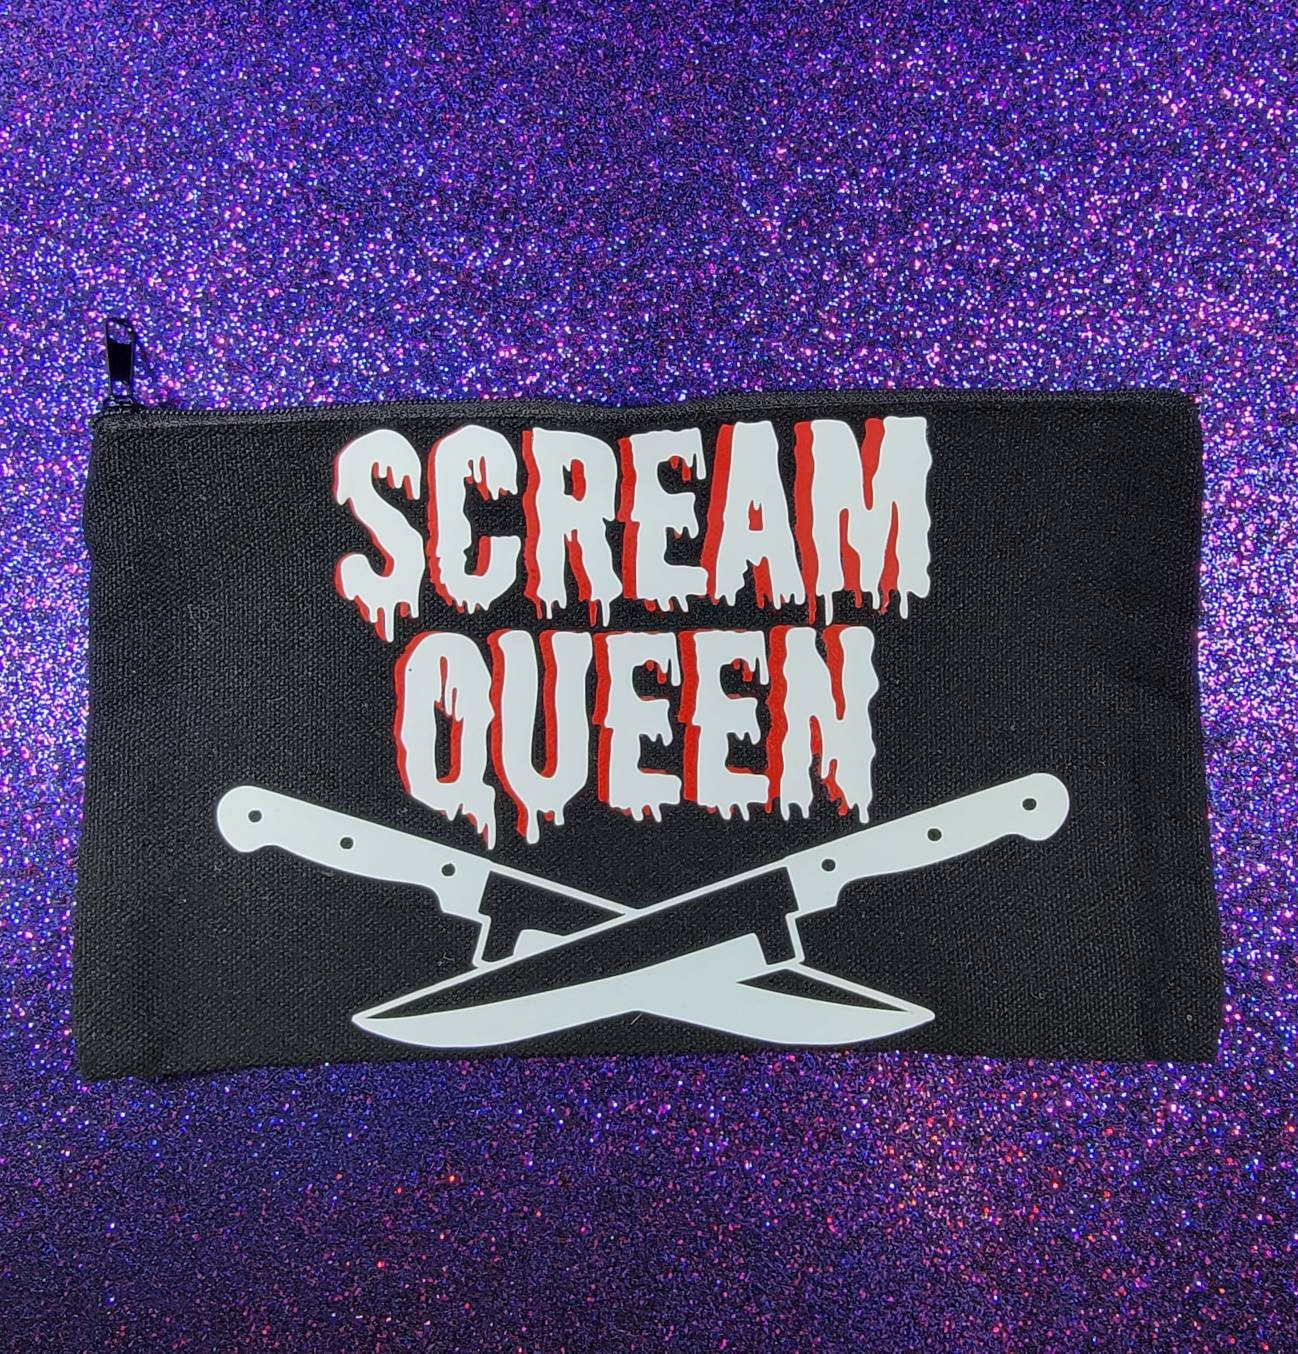 Scream Queen Zippered Pouch, Makeup Bag, Pencil Case 4.8"x8.4"